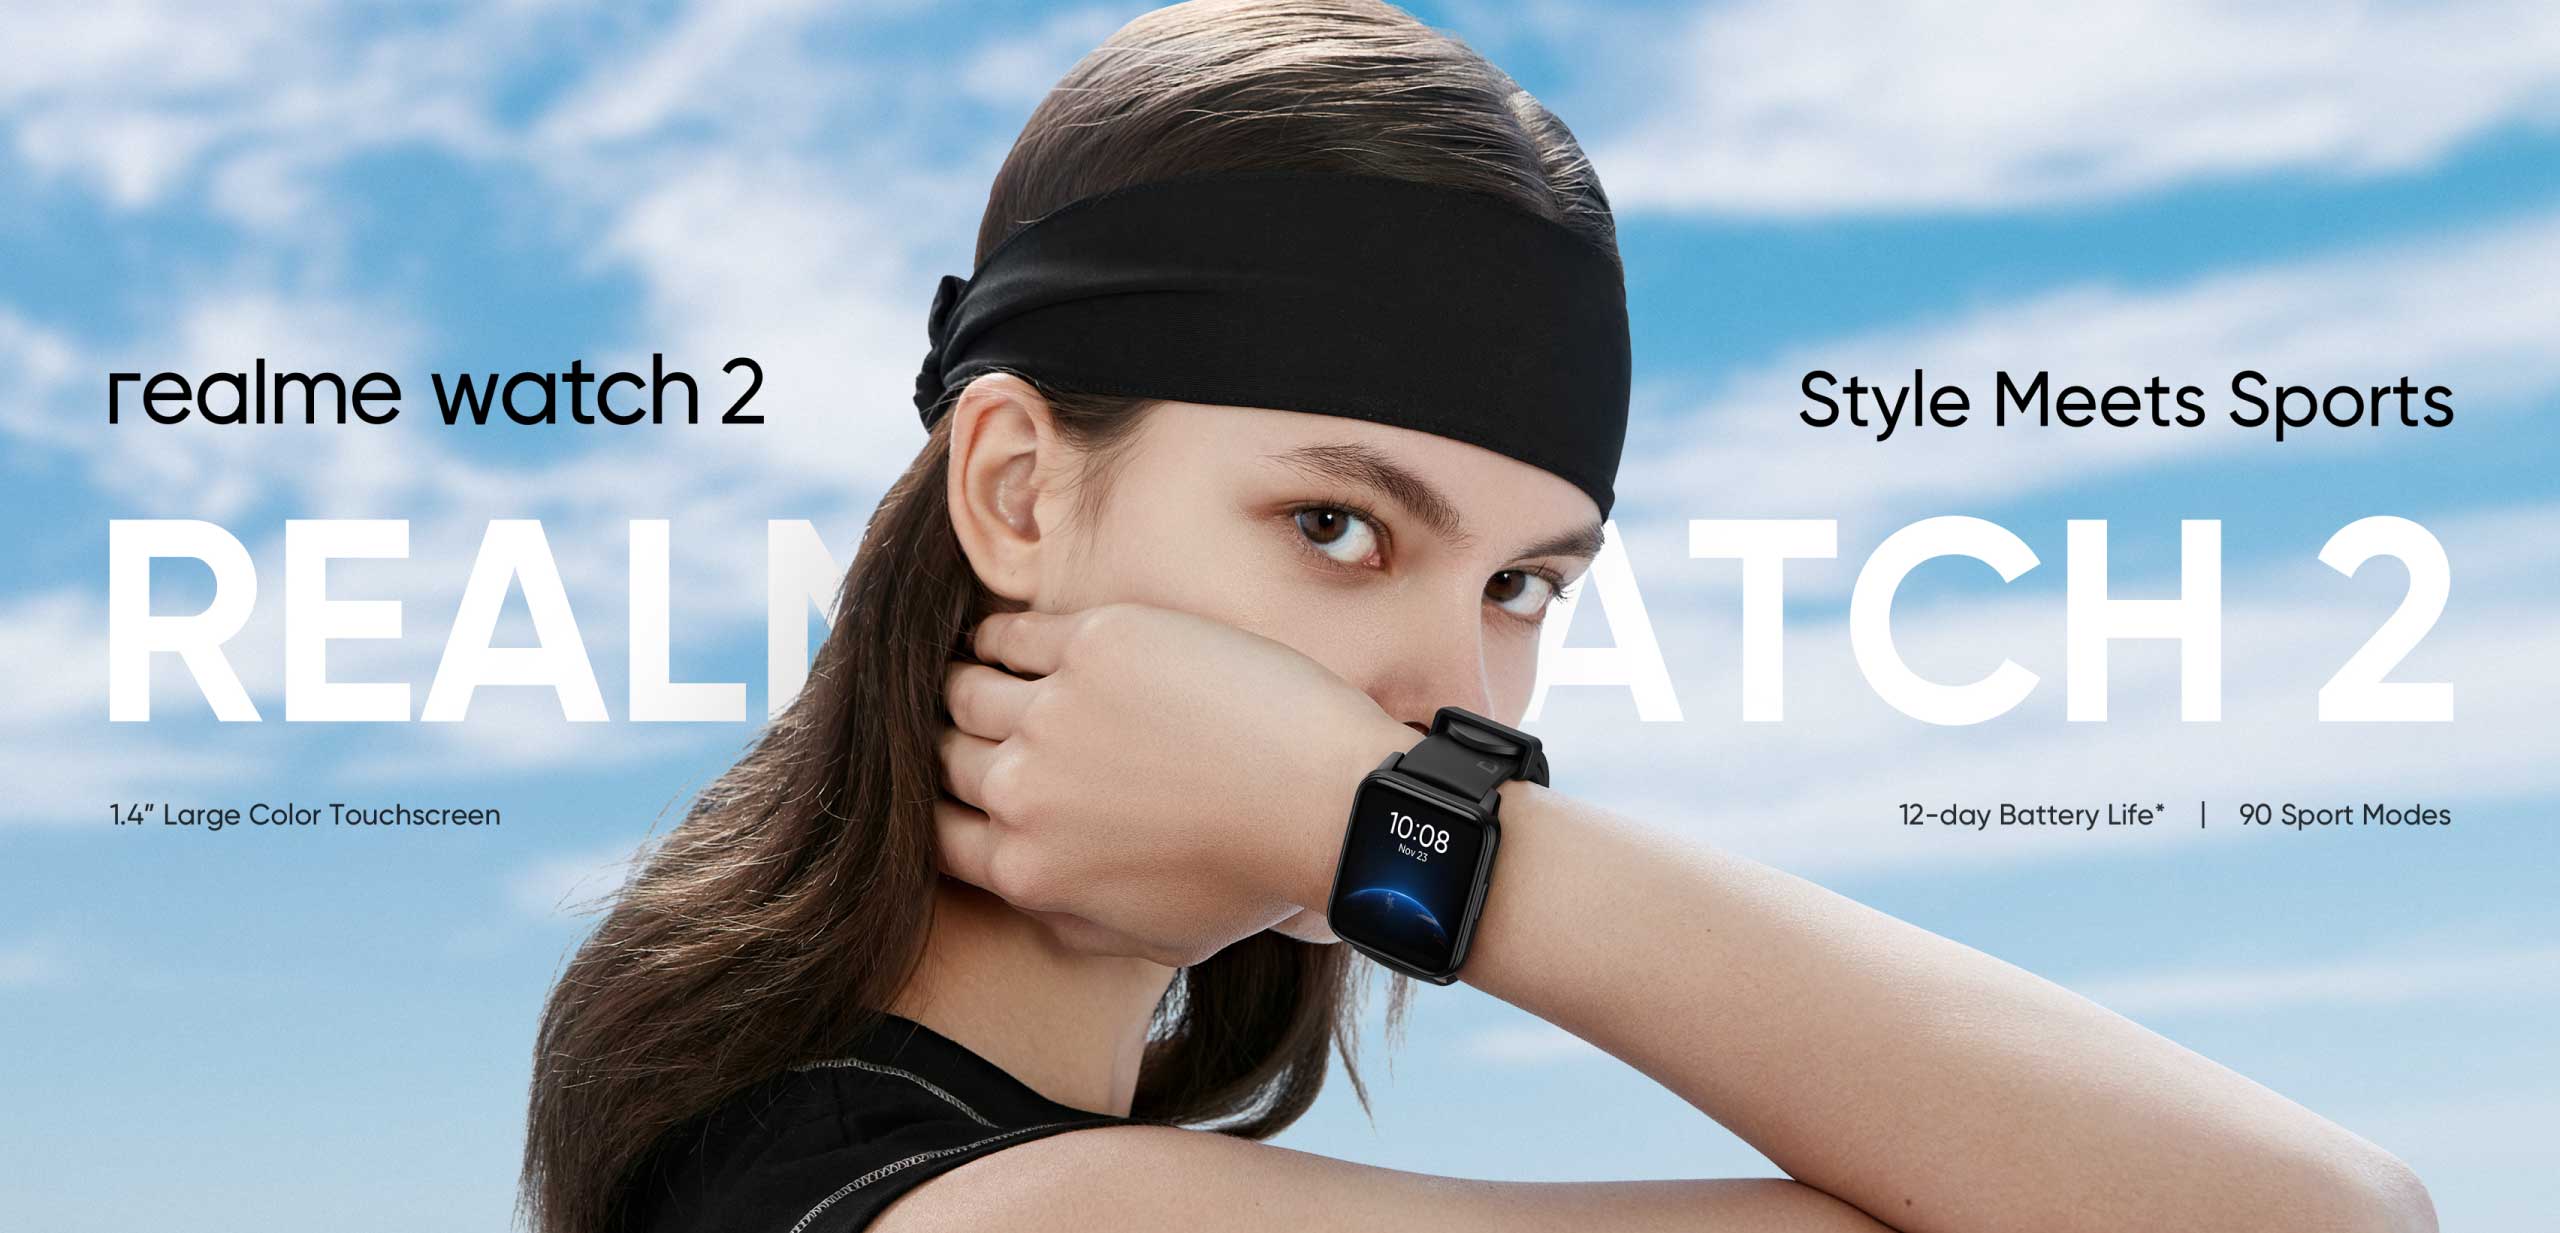 Realme Watch 2 uruchomiony na rynku globalnym: smartwatch z czujnikiem SpO2, ochrona IP68 i autonomia do 12 dni za 55 euro